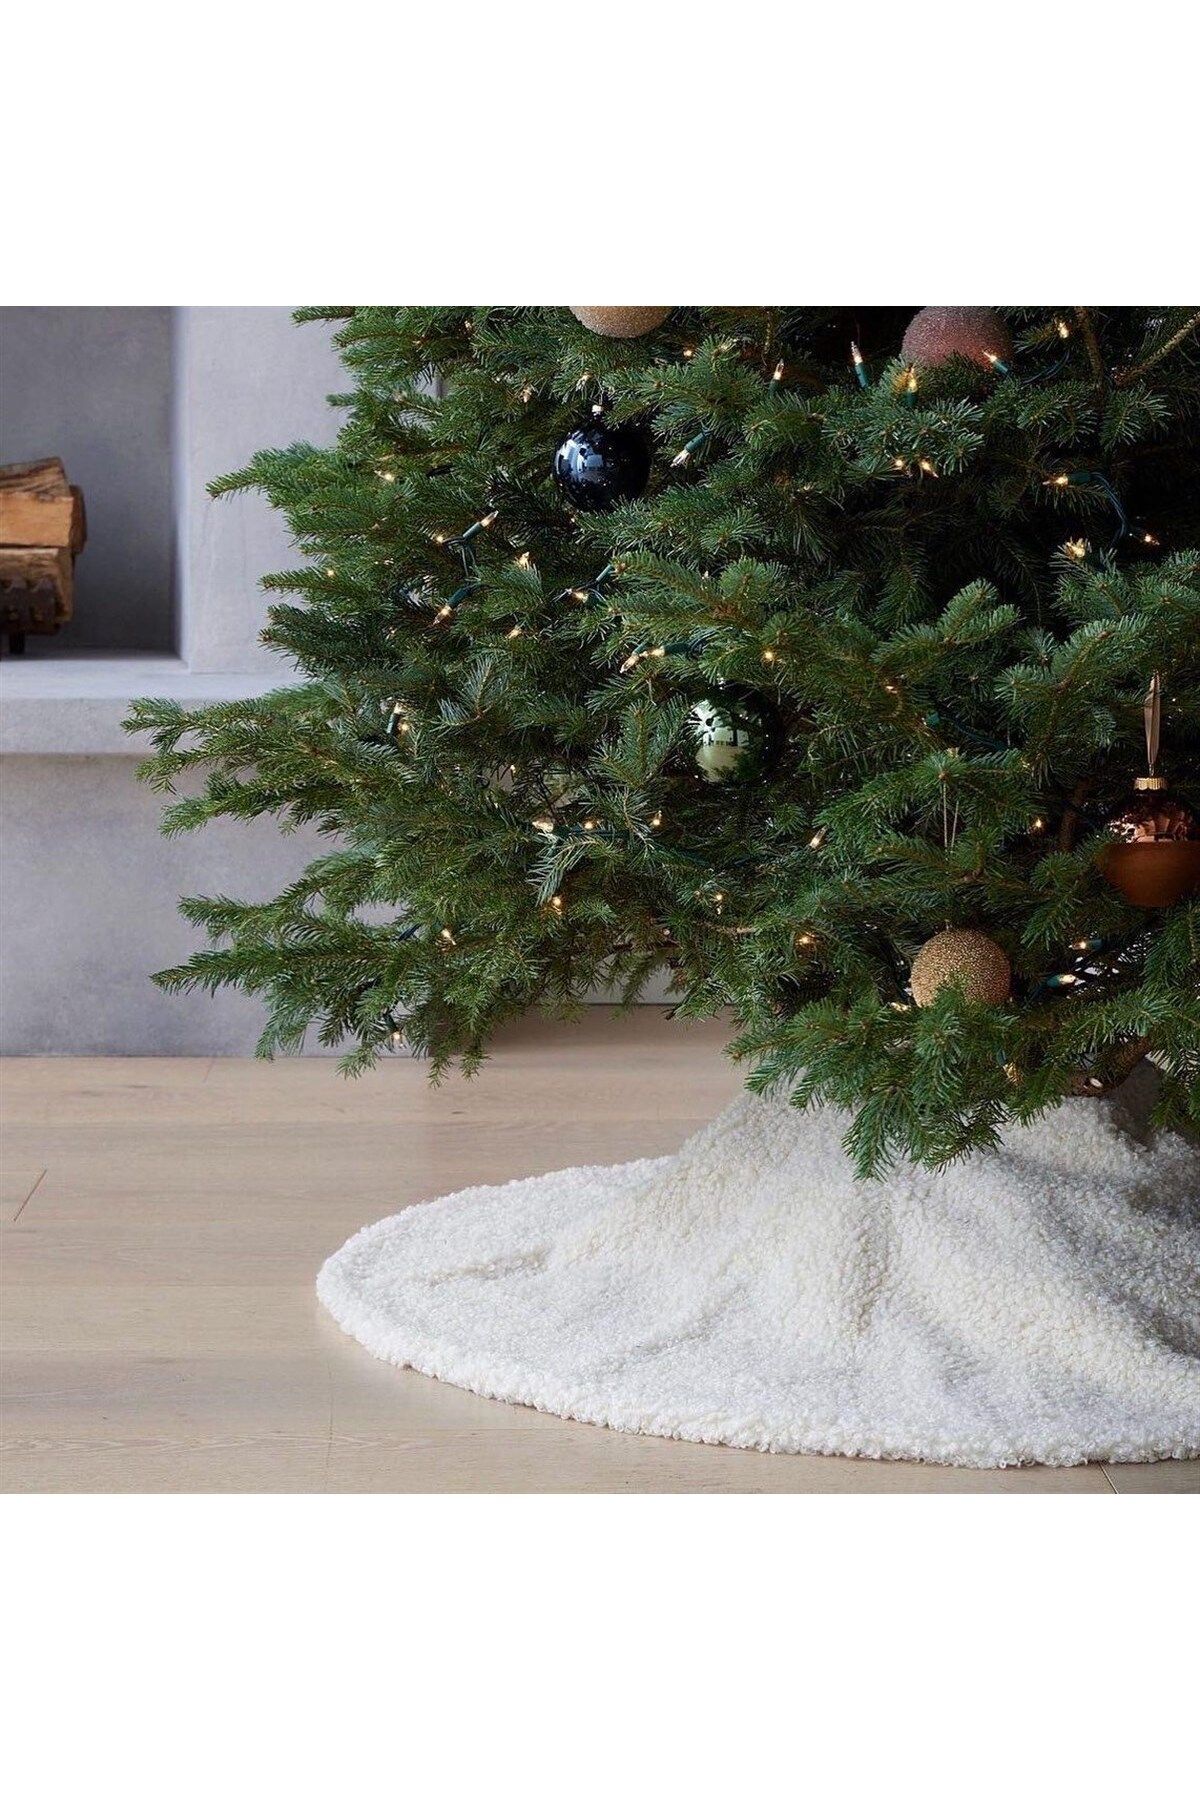 Partifabrik Yılbaşı Lüks Teddy Kumaş Çam Ağacı Altlığı Beyaz Renk Noel Ağaç Altı Örtüsü 120 Cm